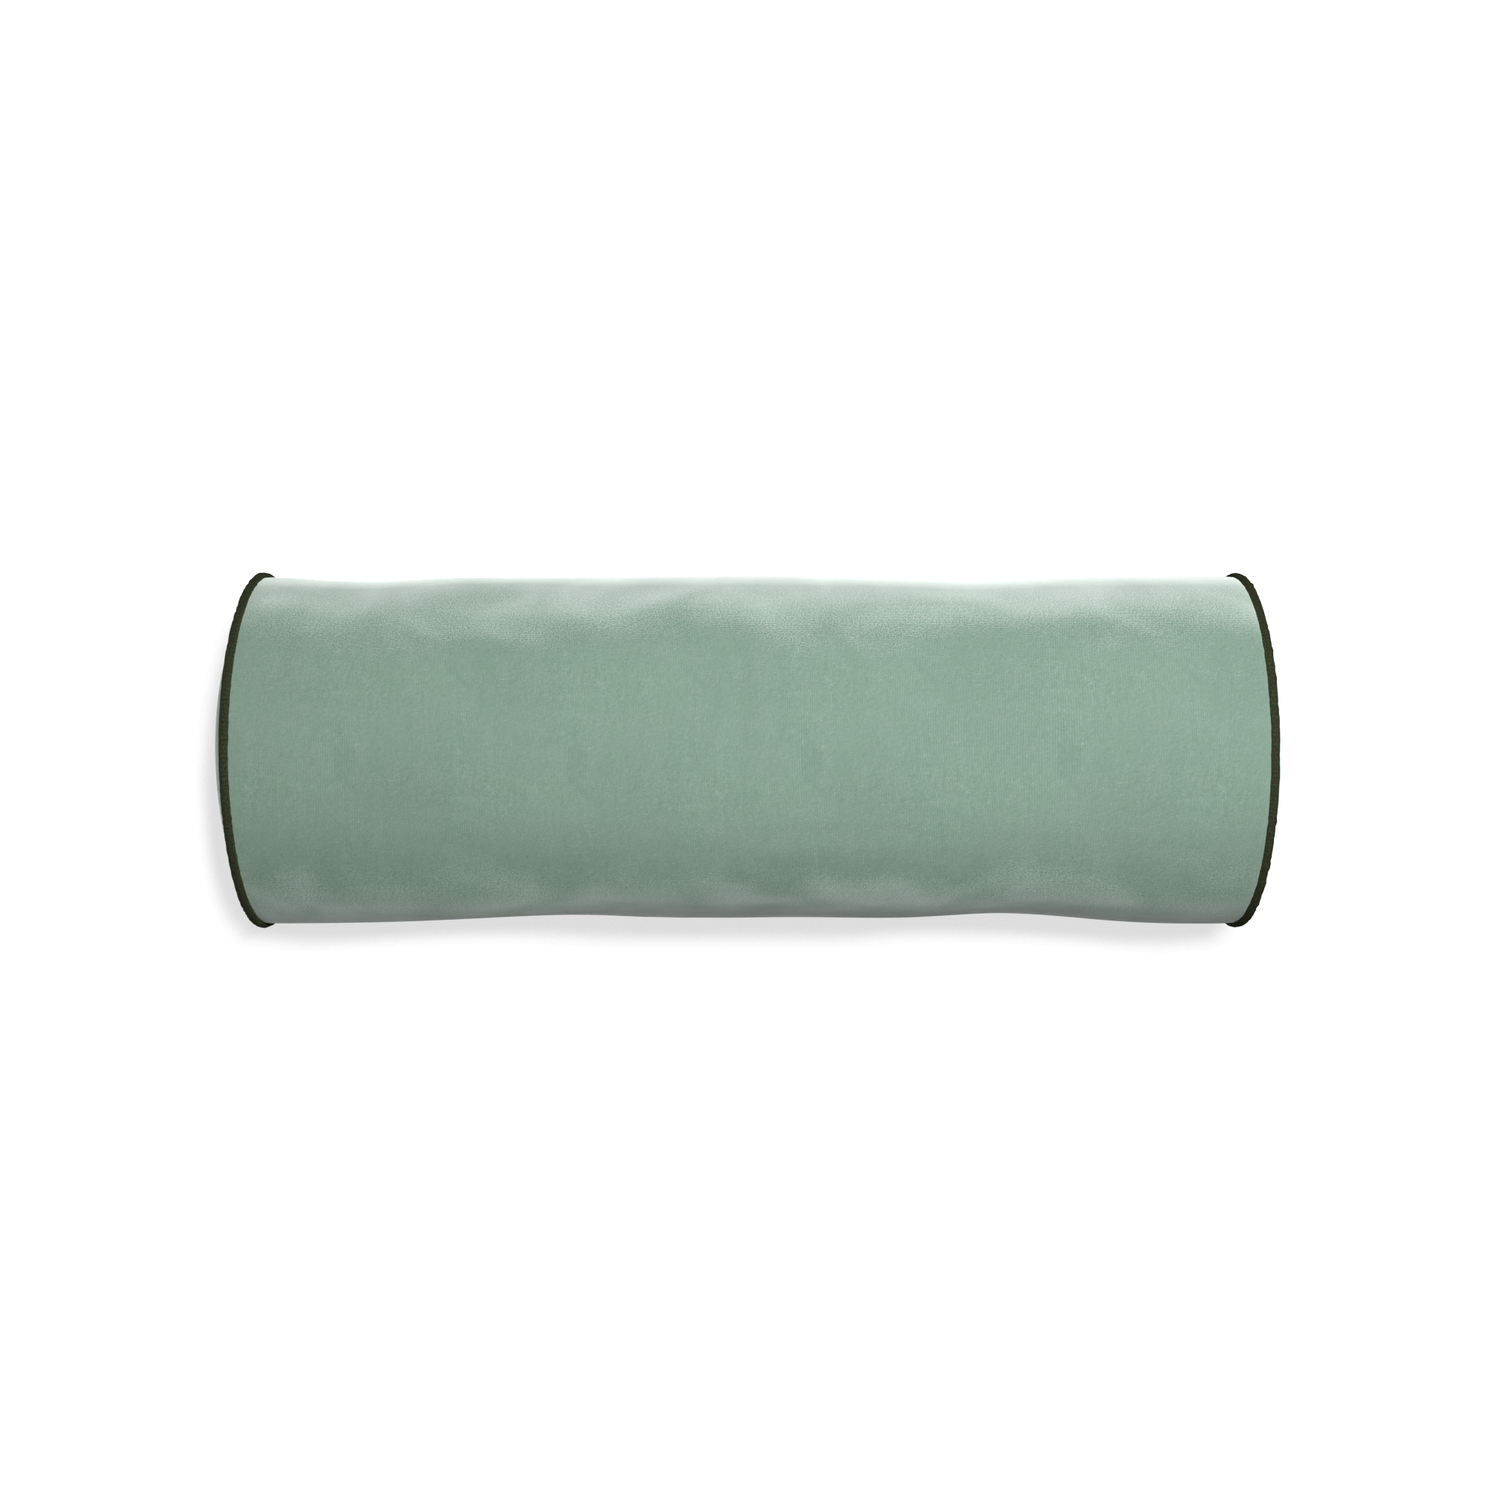 bolster blue green velvet pillow with fern green piping